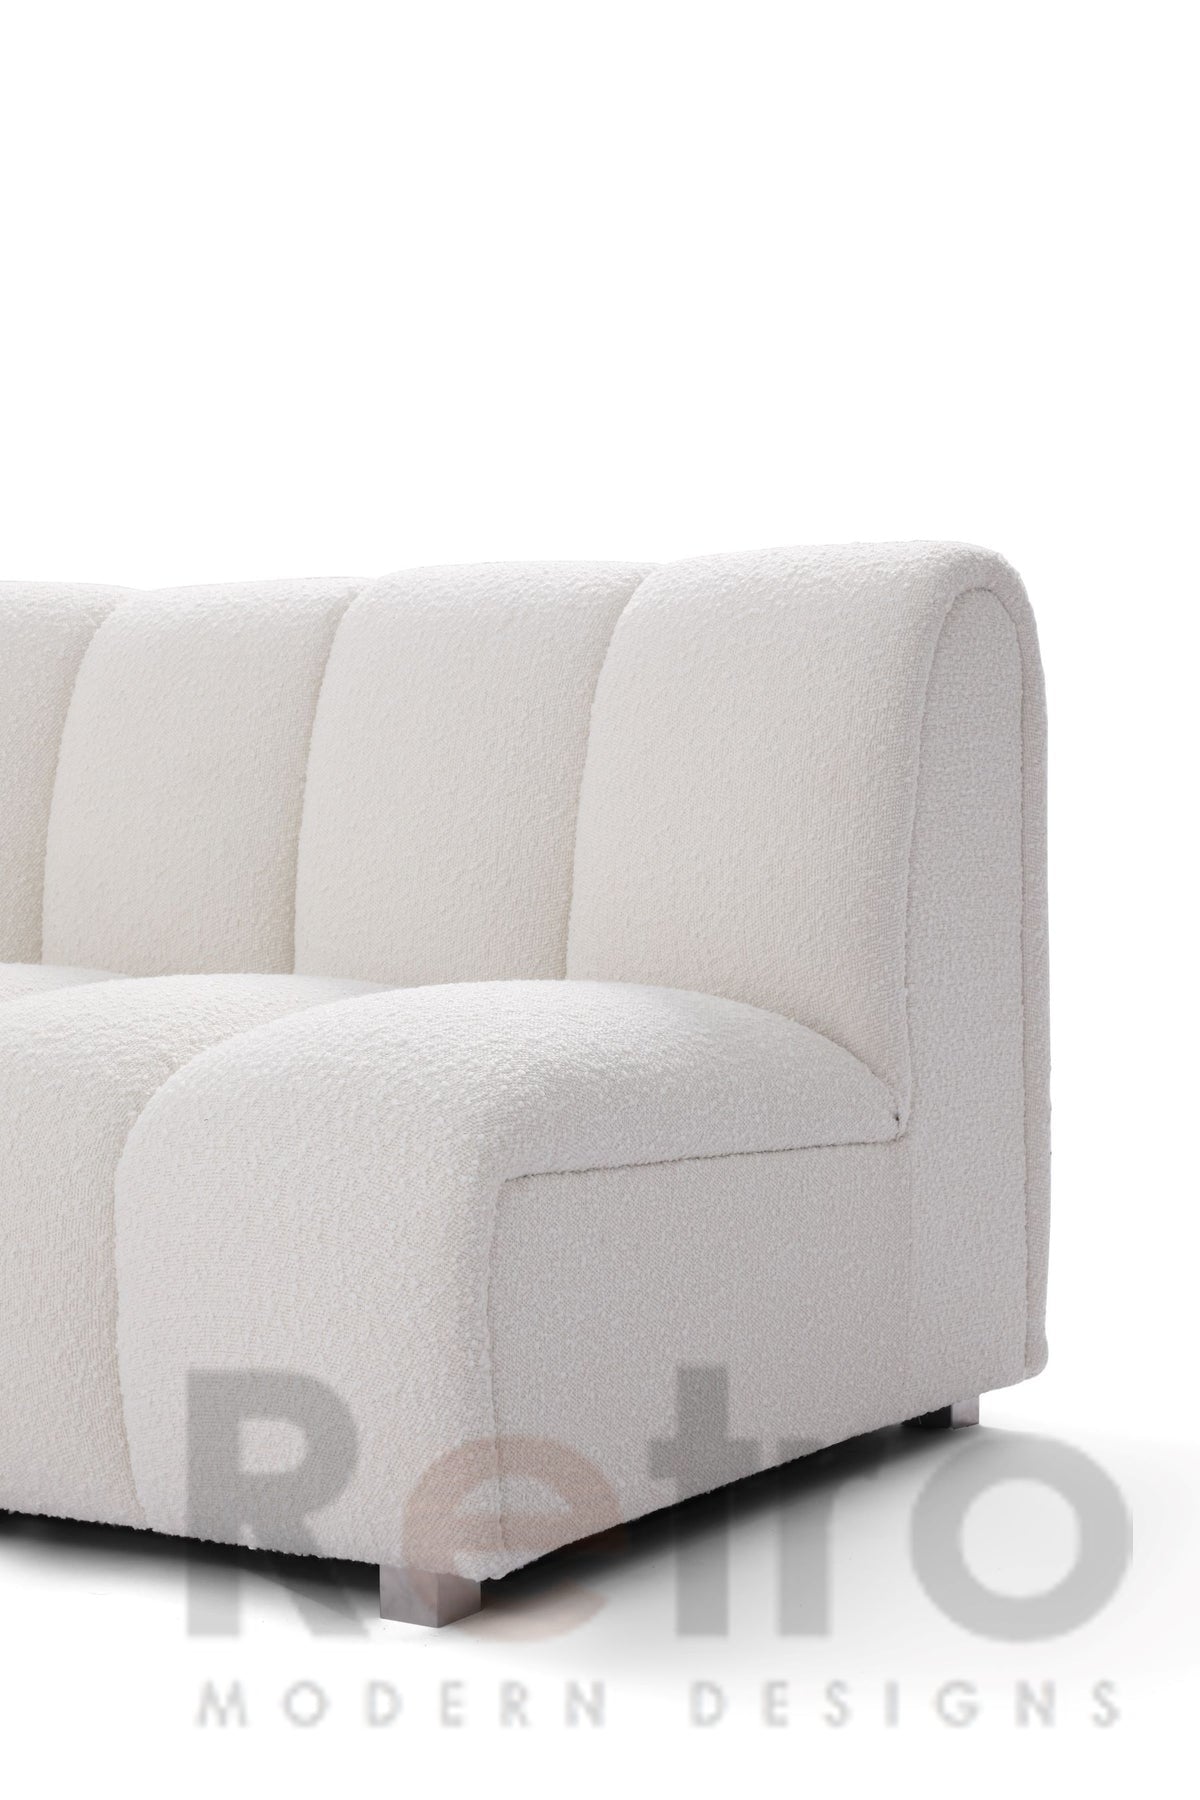 Channel sofa - Retro Modern Designs